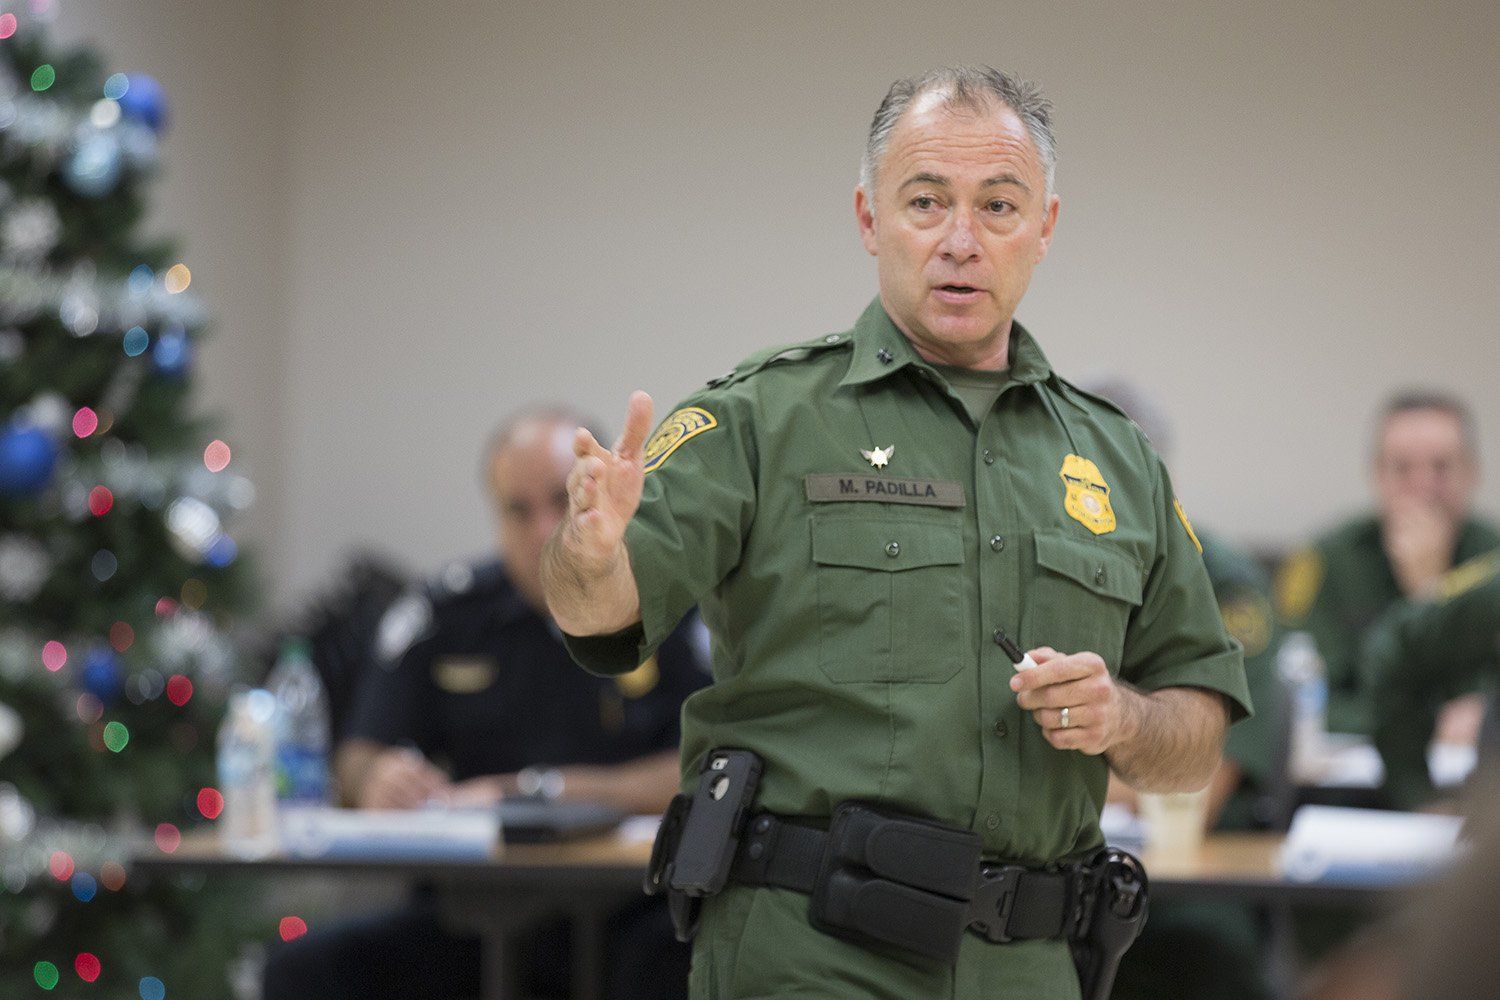 U.S. Border Patrol Rio Grande Valley Sector Chief Manuel Padilla. Image courtesy U.S. Border Patrol.